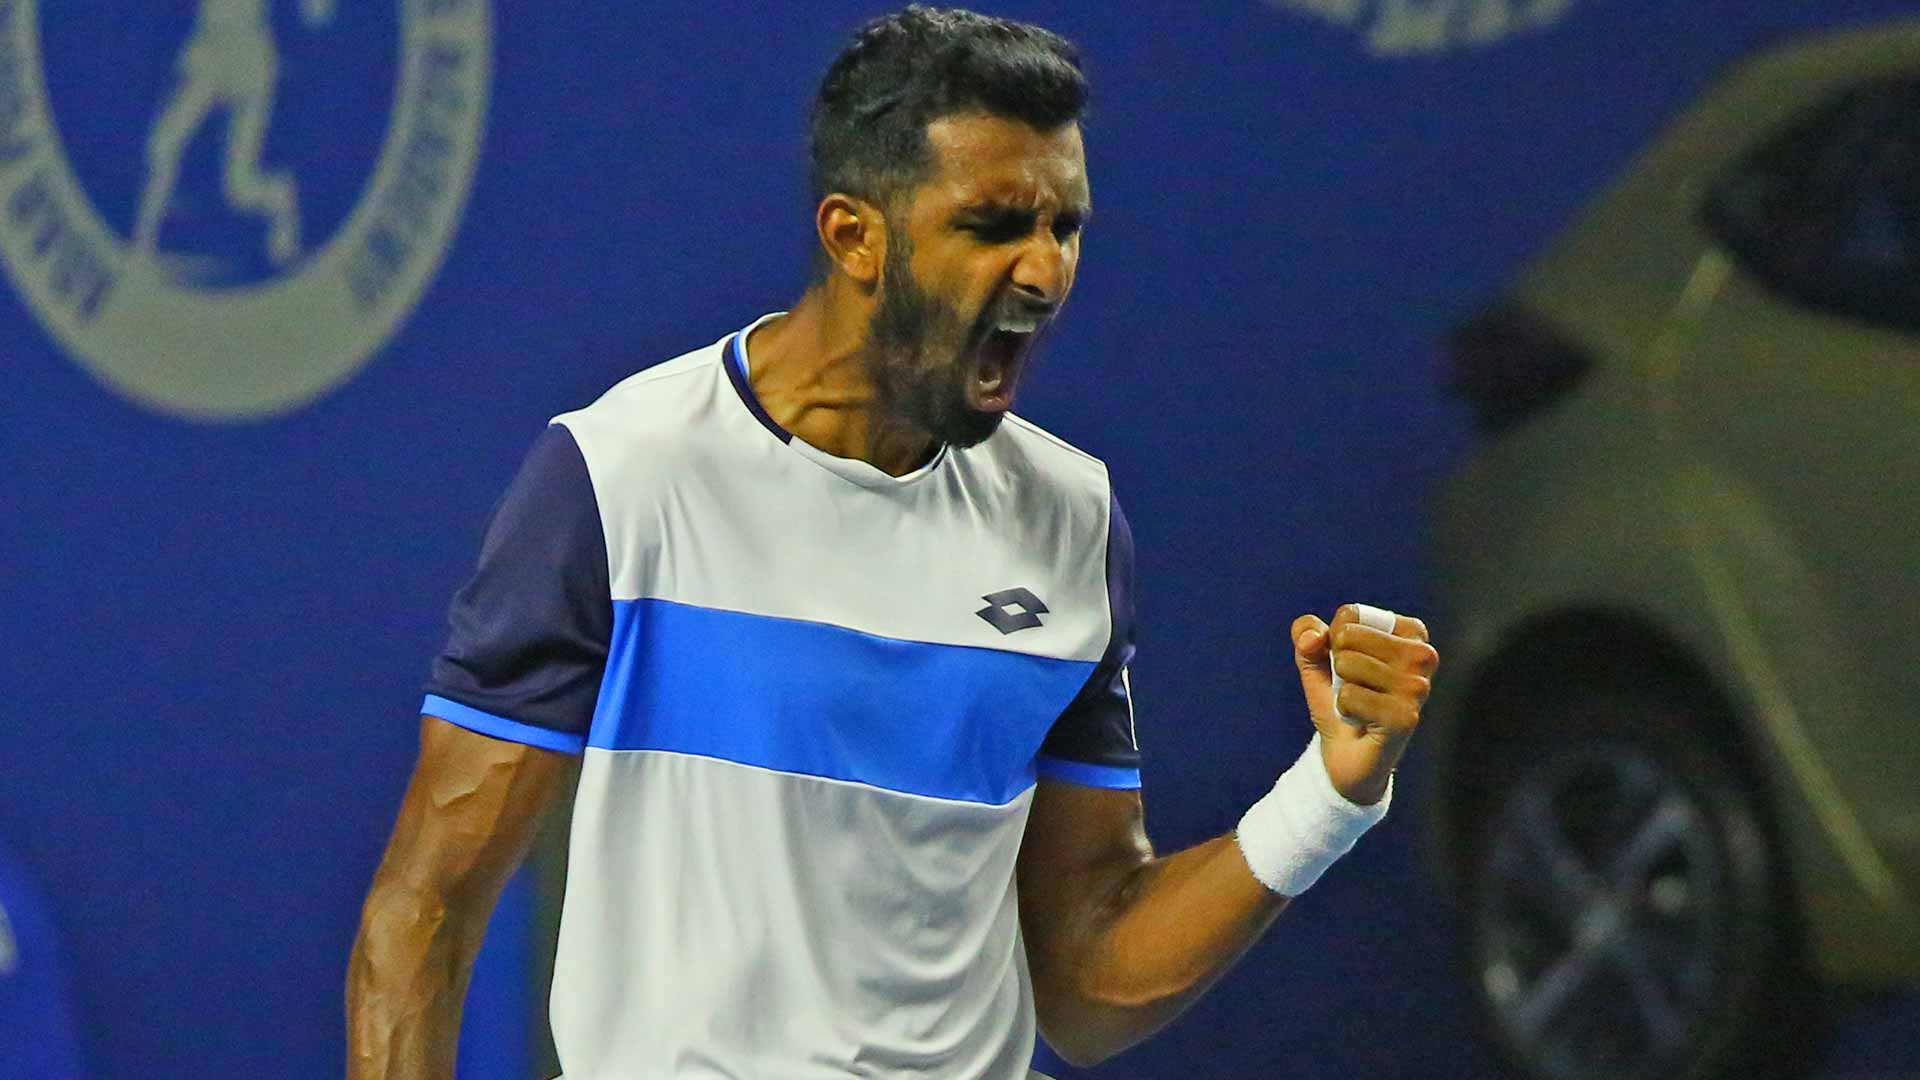 Prajnesh Gunneswaran is going for his first ATP Tour quarter-final this week in Pune.